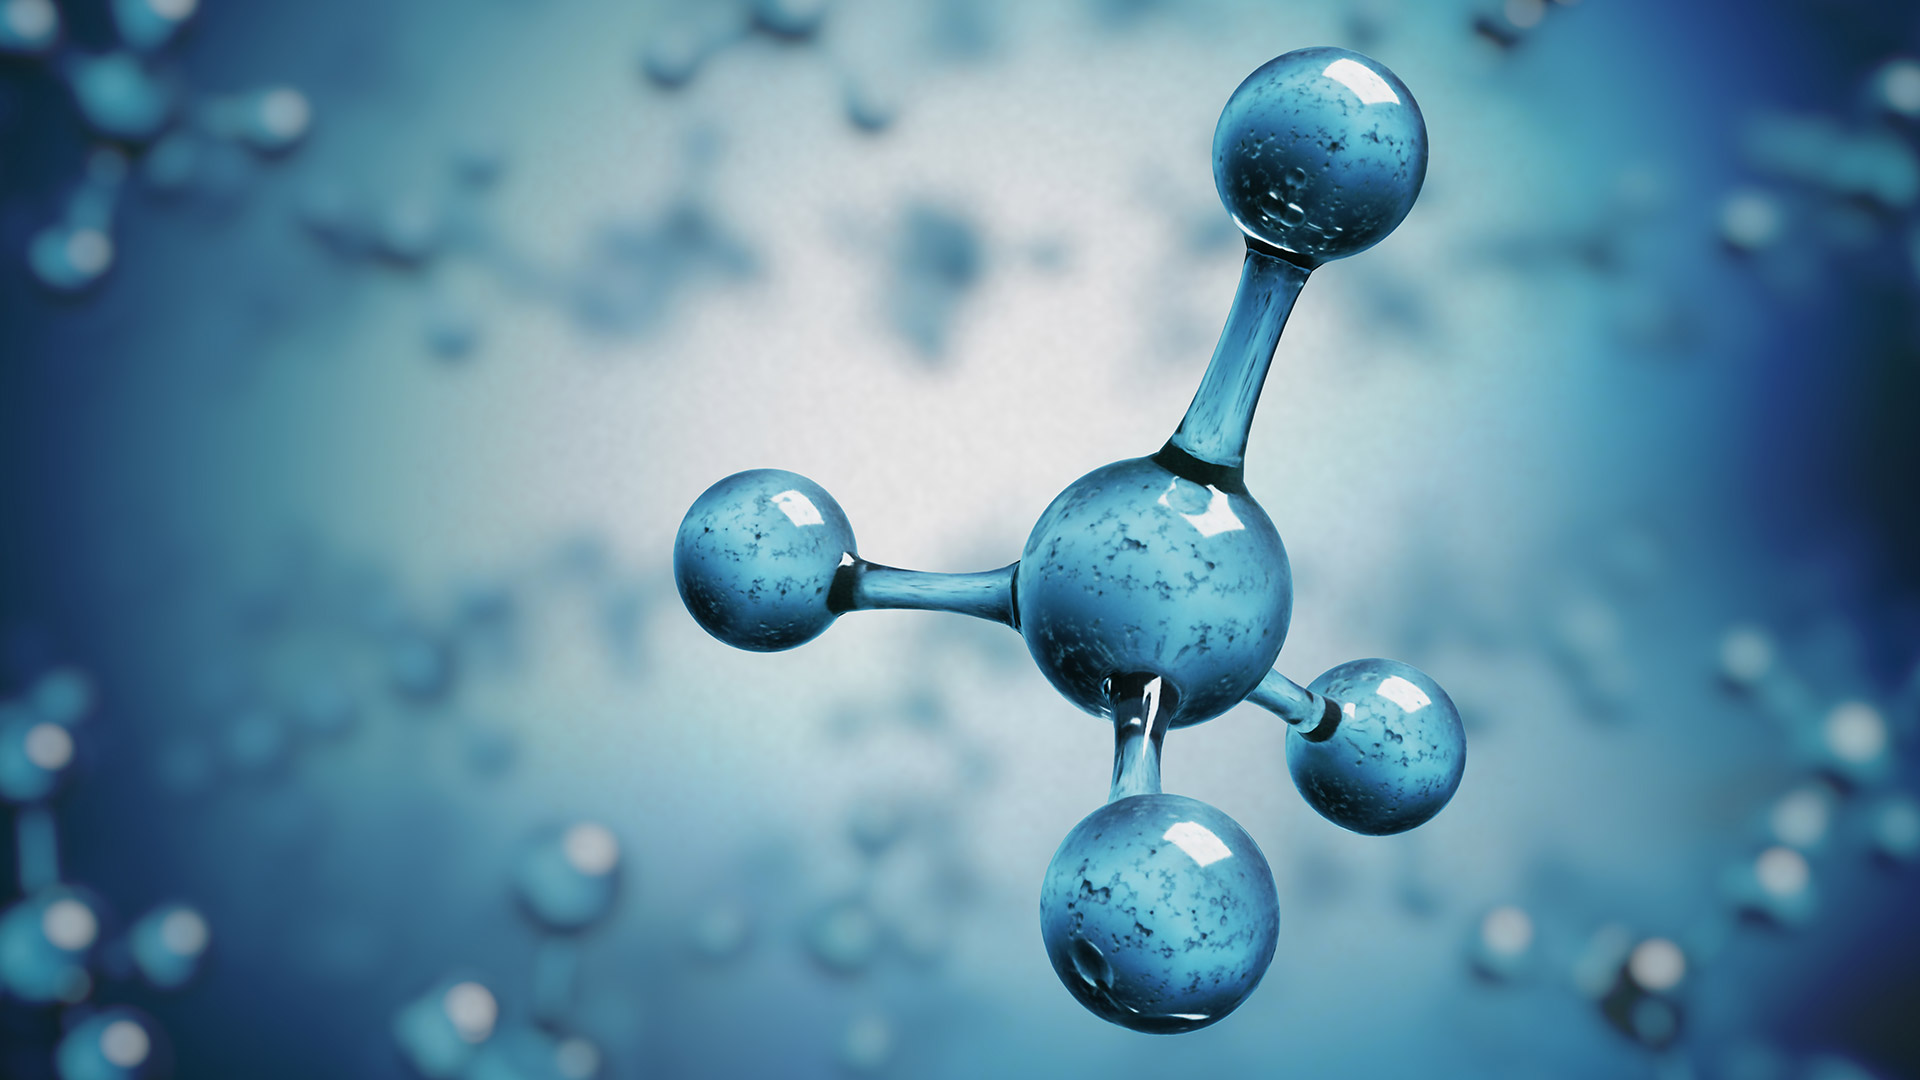 Blue atom/molecule